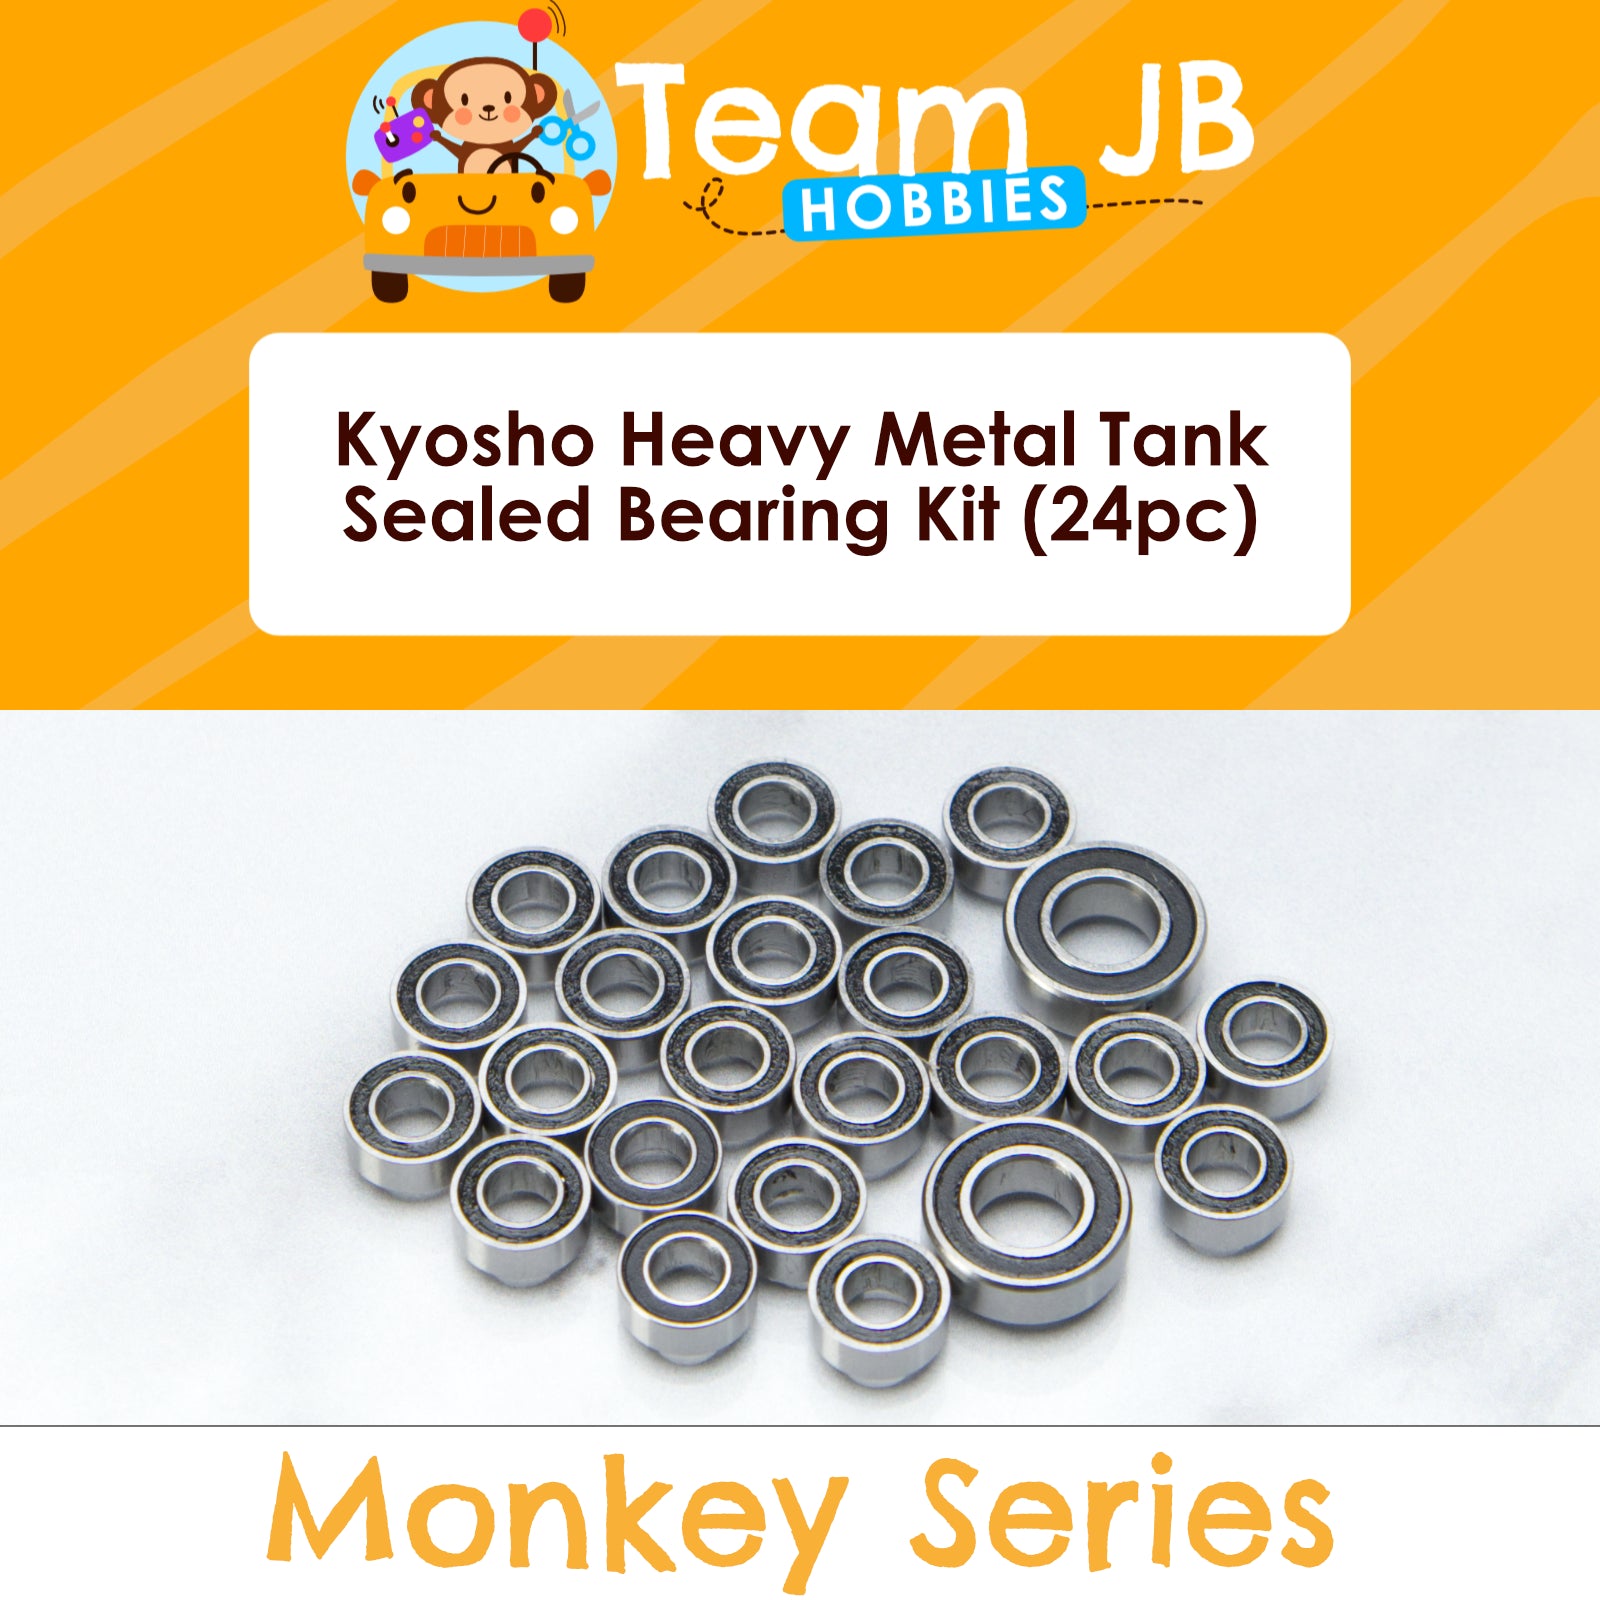 Kyosho Heavy Metal Tank - Sealed Bearing Kit